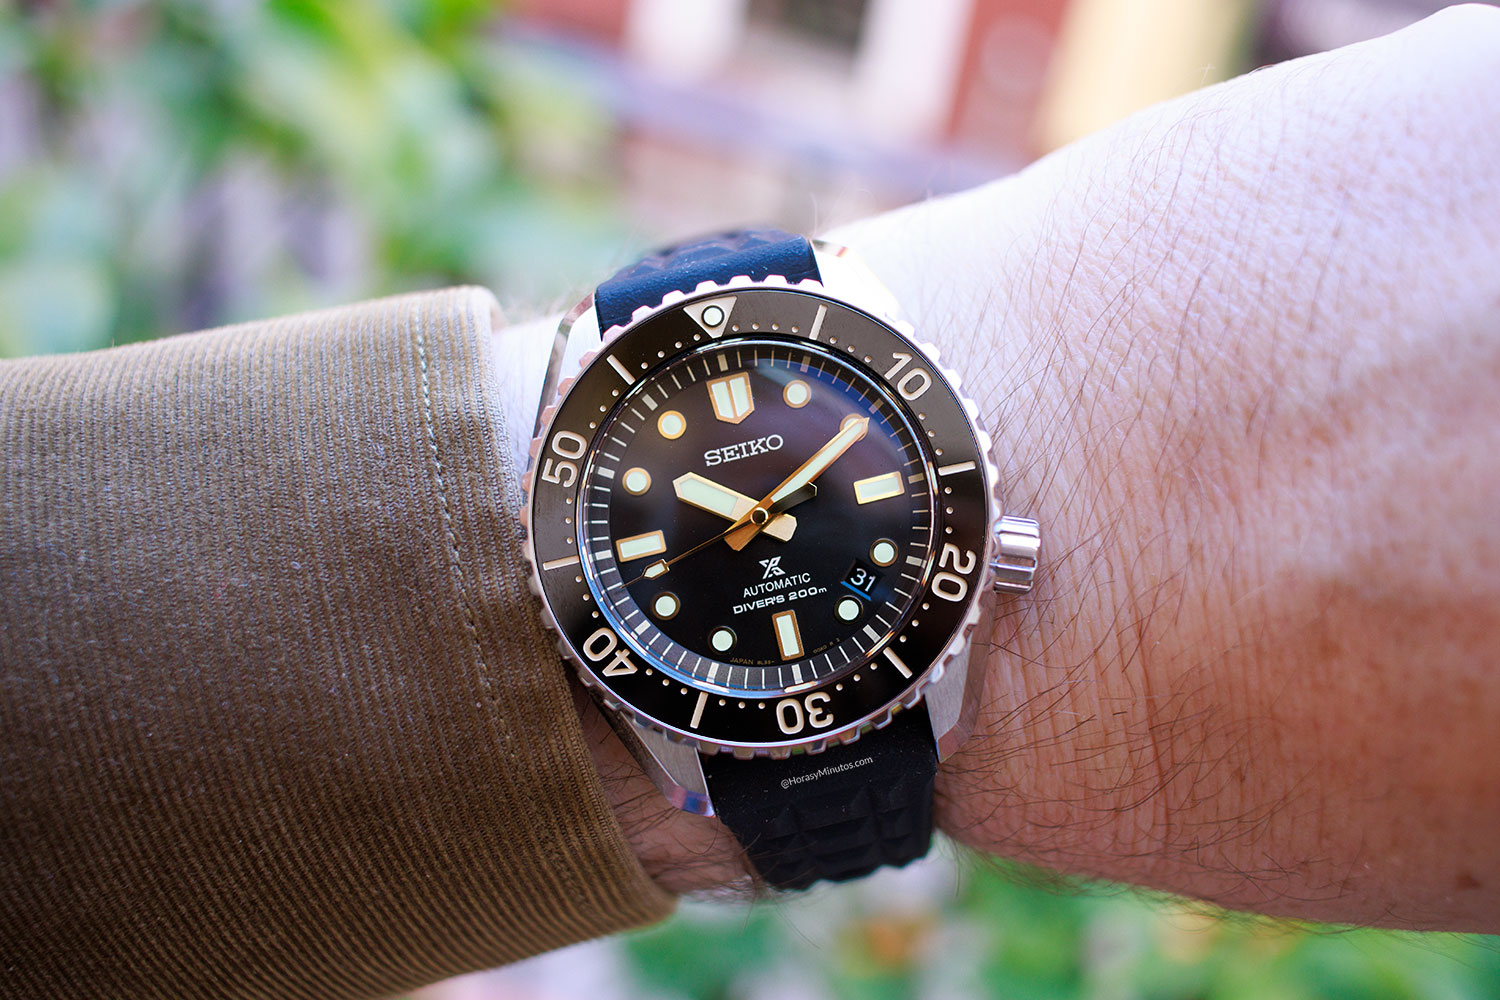 El Seiko Prospex 1968 Diver’s “Save-the-Ocean” SLA057, puesto